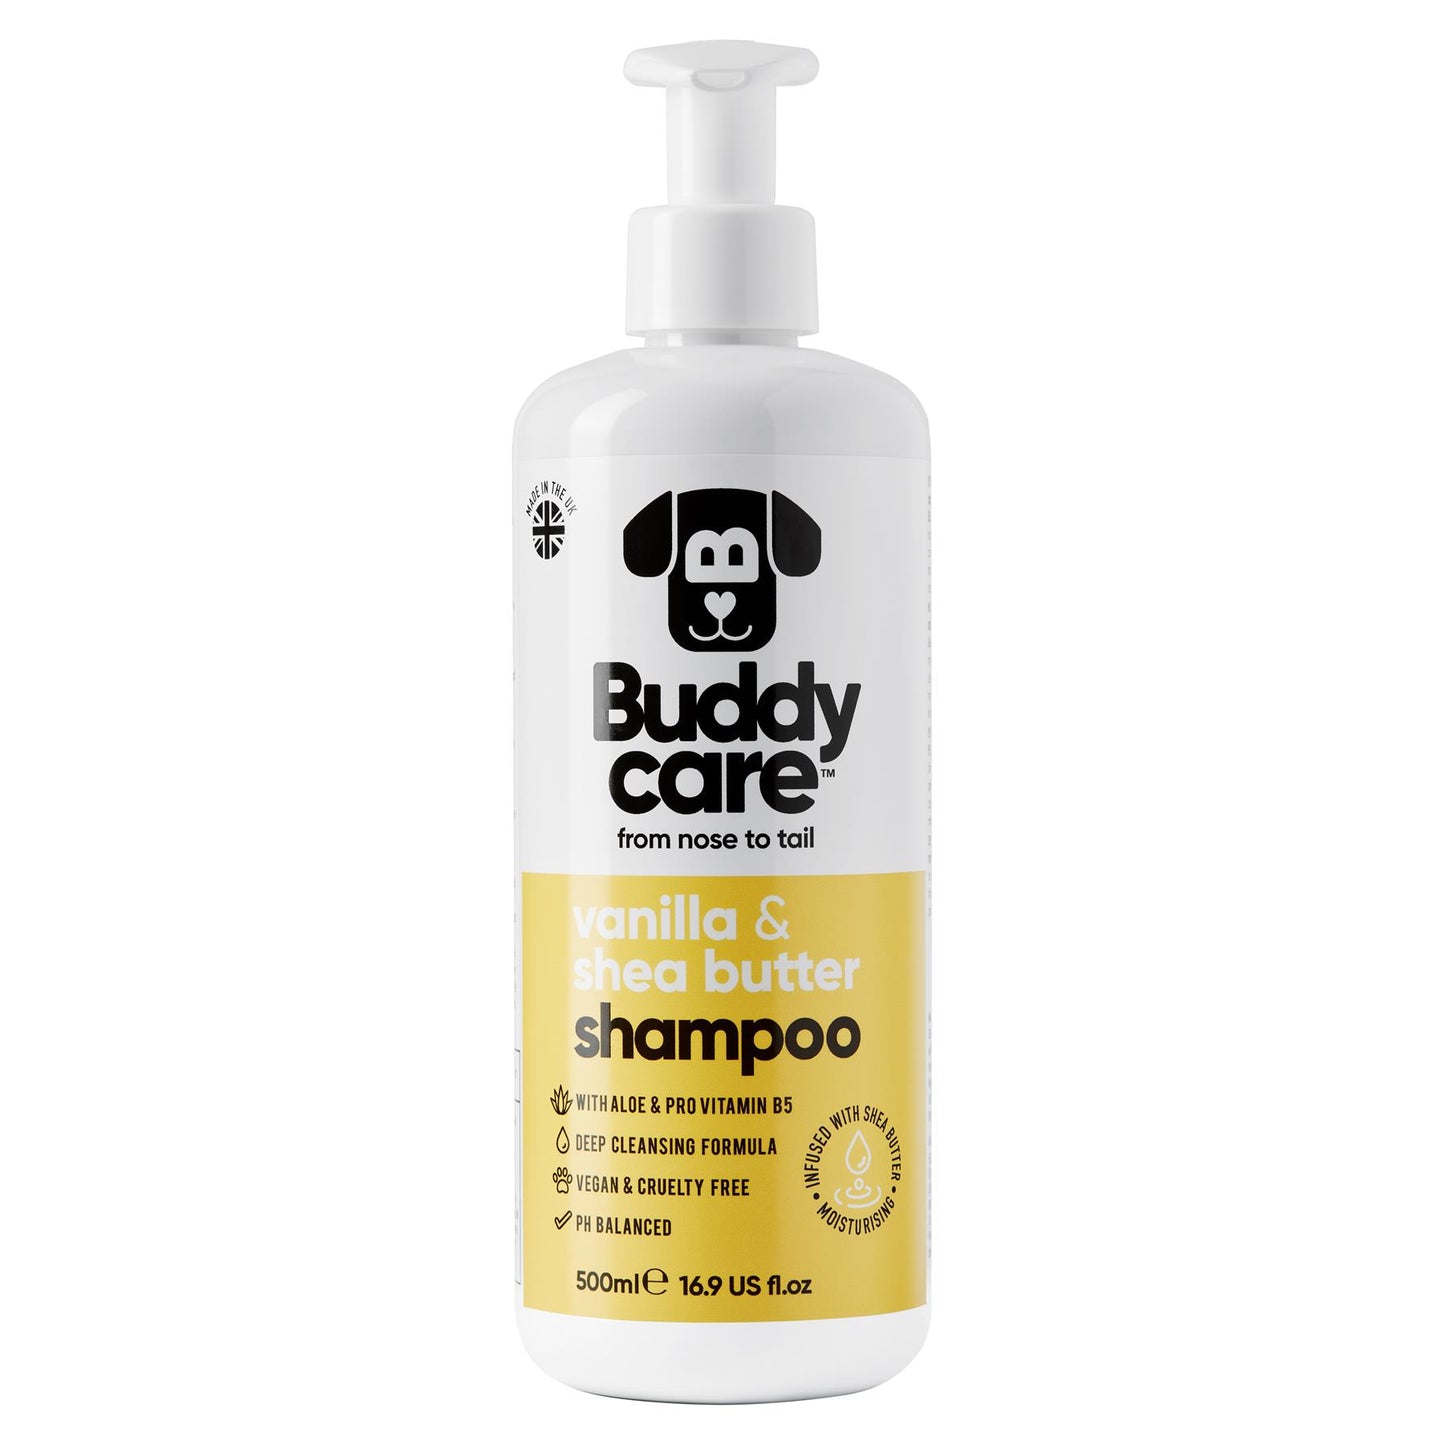 Buddycare Vanilla & Shea Butter Shampoo